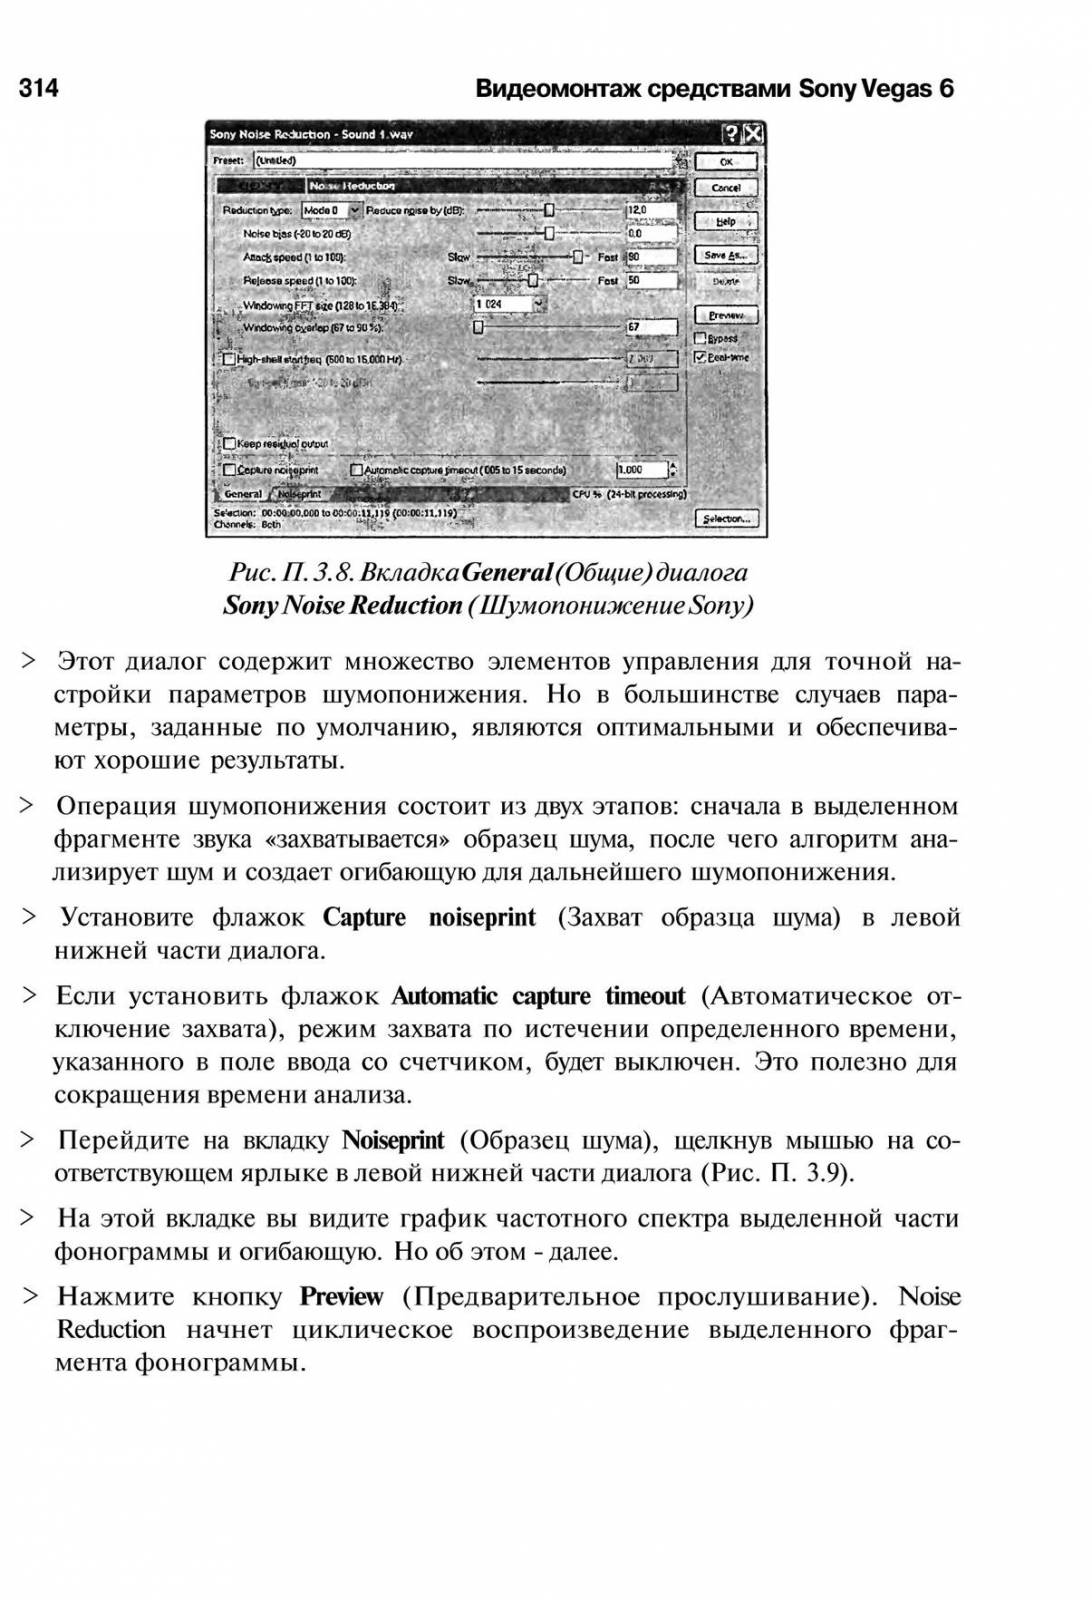 http://redaktori-uroki.3dn.ru/_ph/14/149501858.jpg